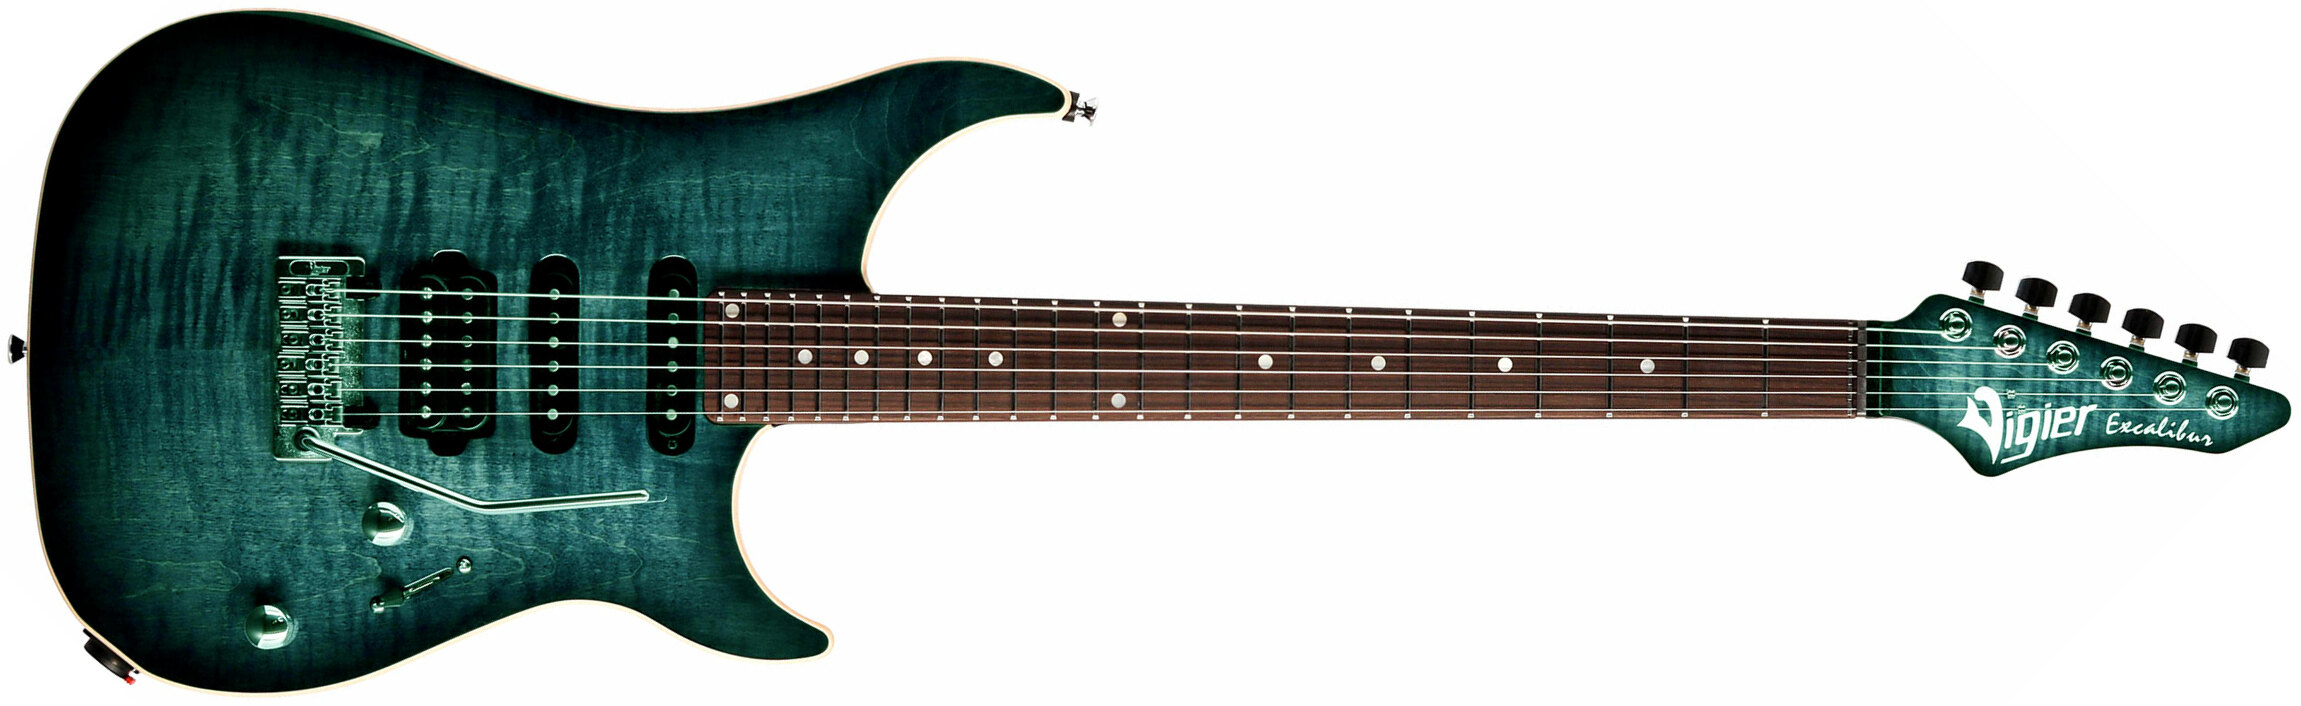 Vigier Excalibur Ultra Blues Hss Trem Rw - Deep Blue - E-Gitarre in Str-Form - Main picture